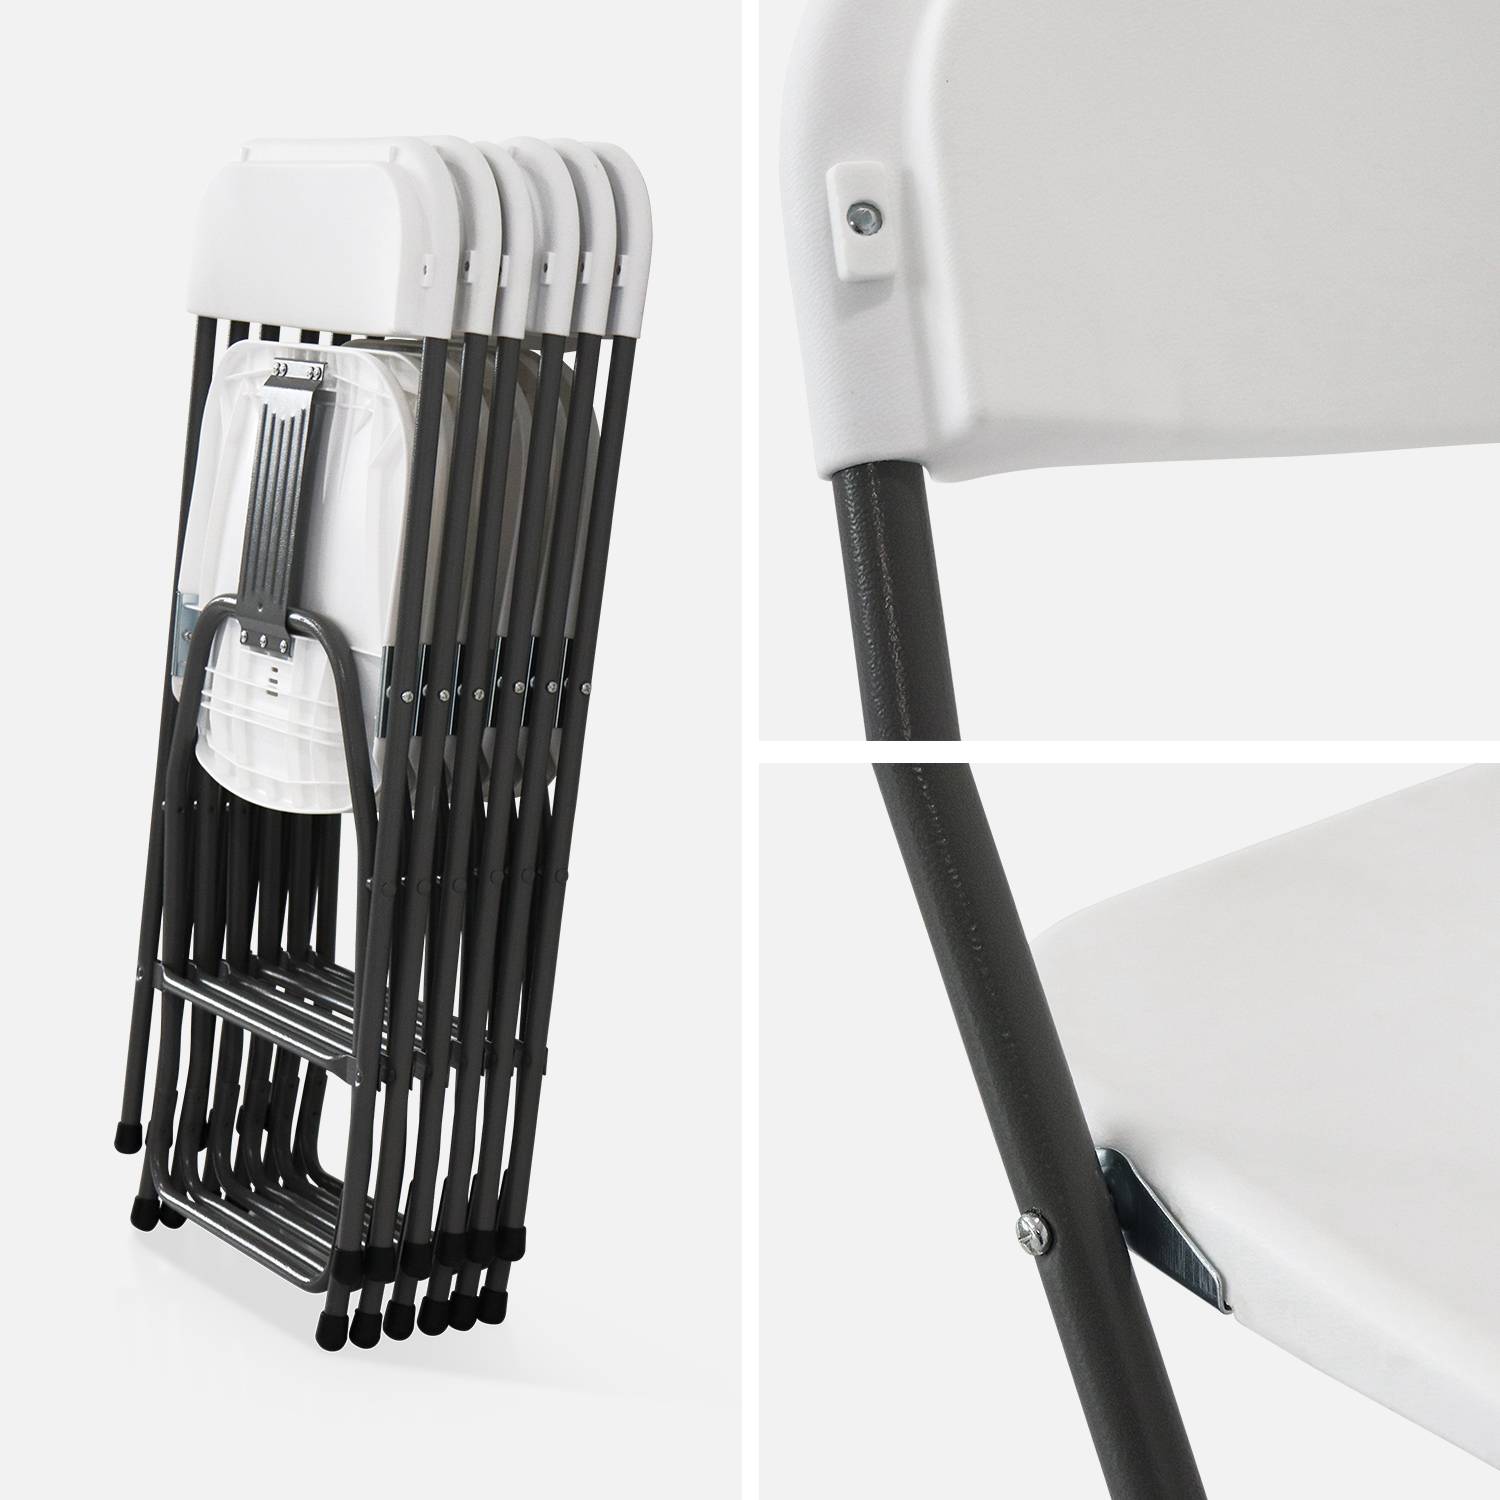  Sillas de celebración plegables – Fiesta – 6 sillas en plástico y metal Photo6